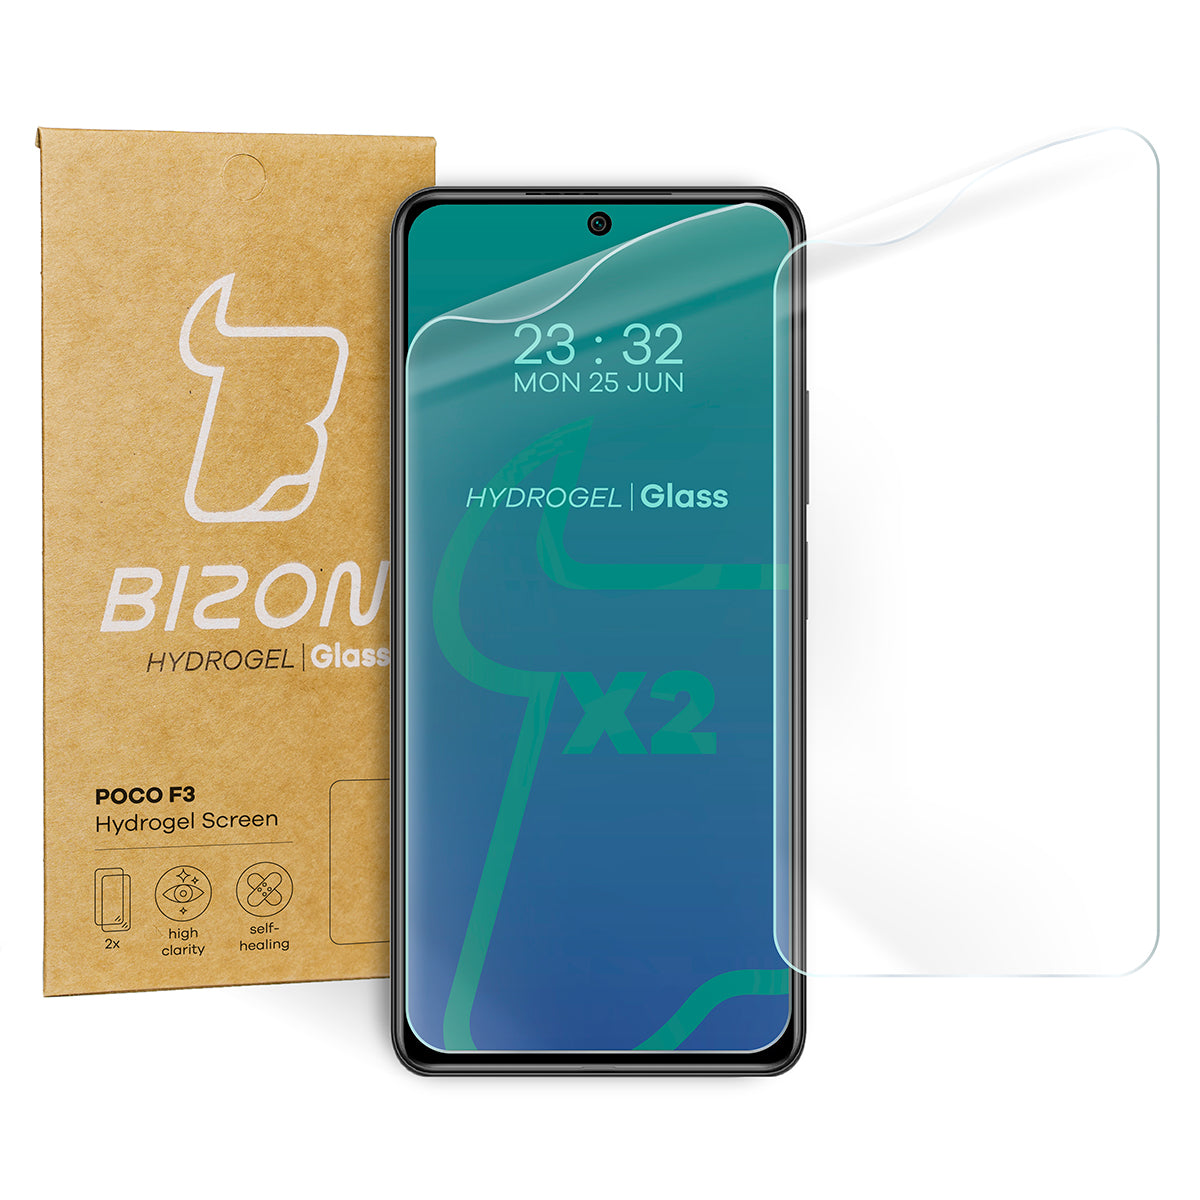 Hydrogel Folie für den Bildschirm Bizon Glass Hydrogel, Xiaomi POCO F3, 2 Stück